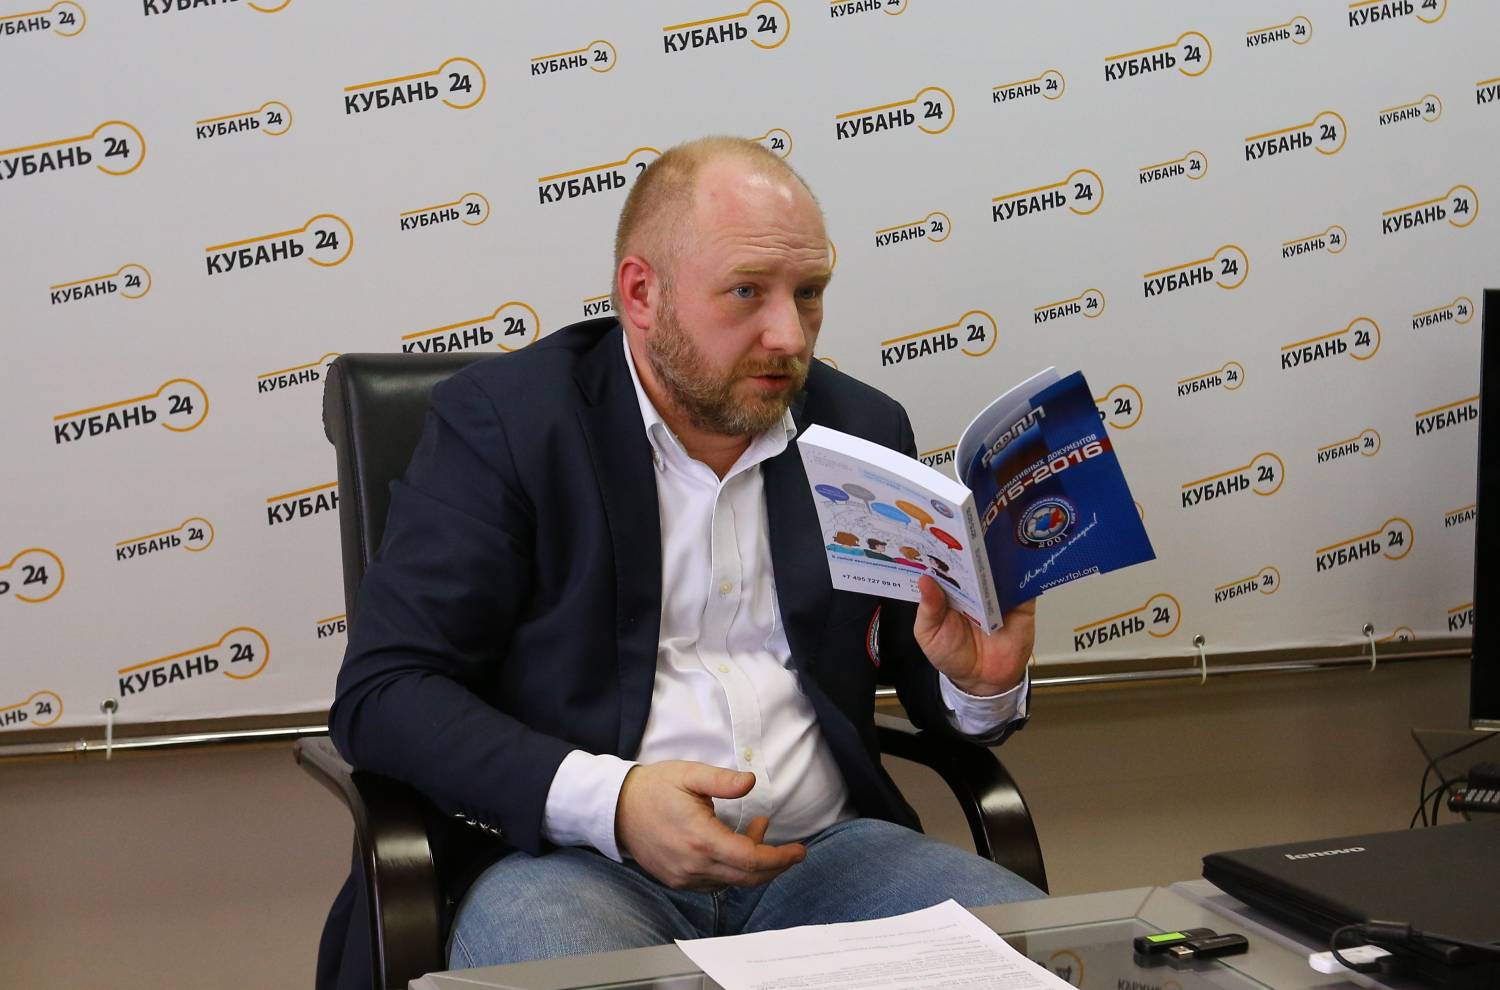 Спортивные журналисты Кубани получили сборники нормативных документов по РФПЛ и ФК